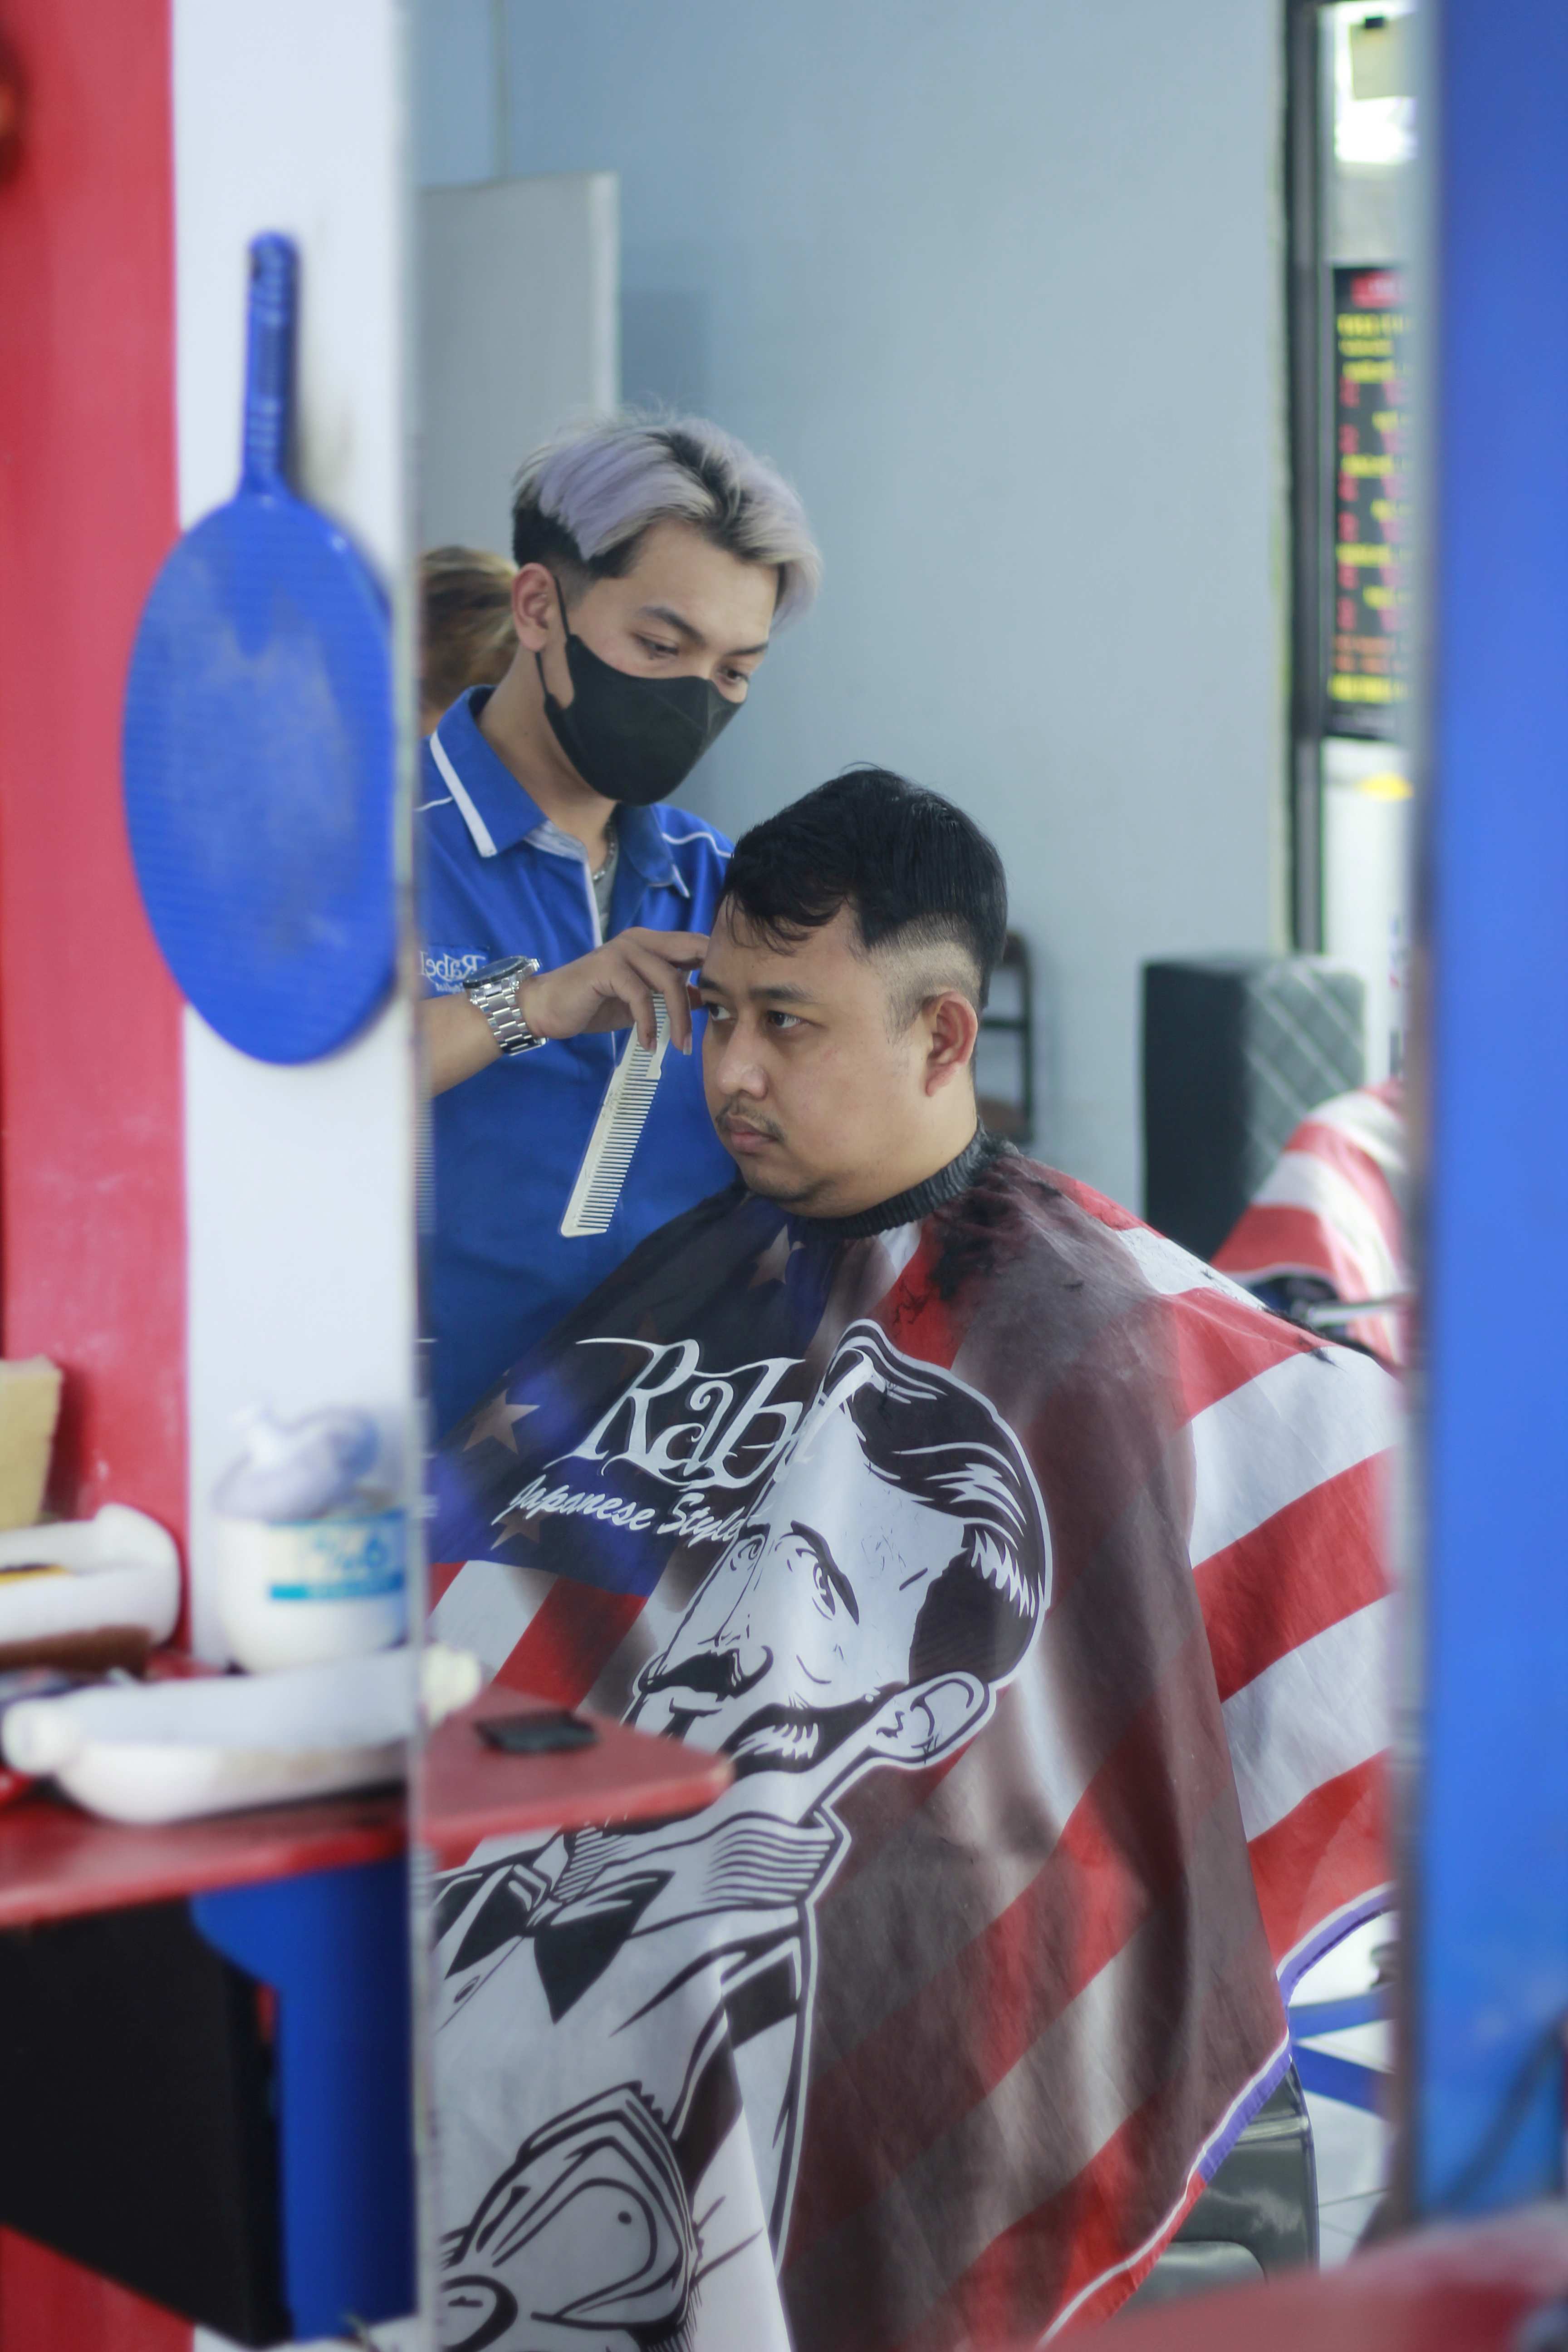 Harga Cukur Rambut Di Kelurahan Sawojajar Murah